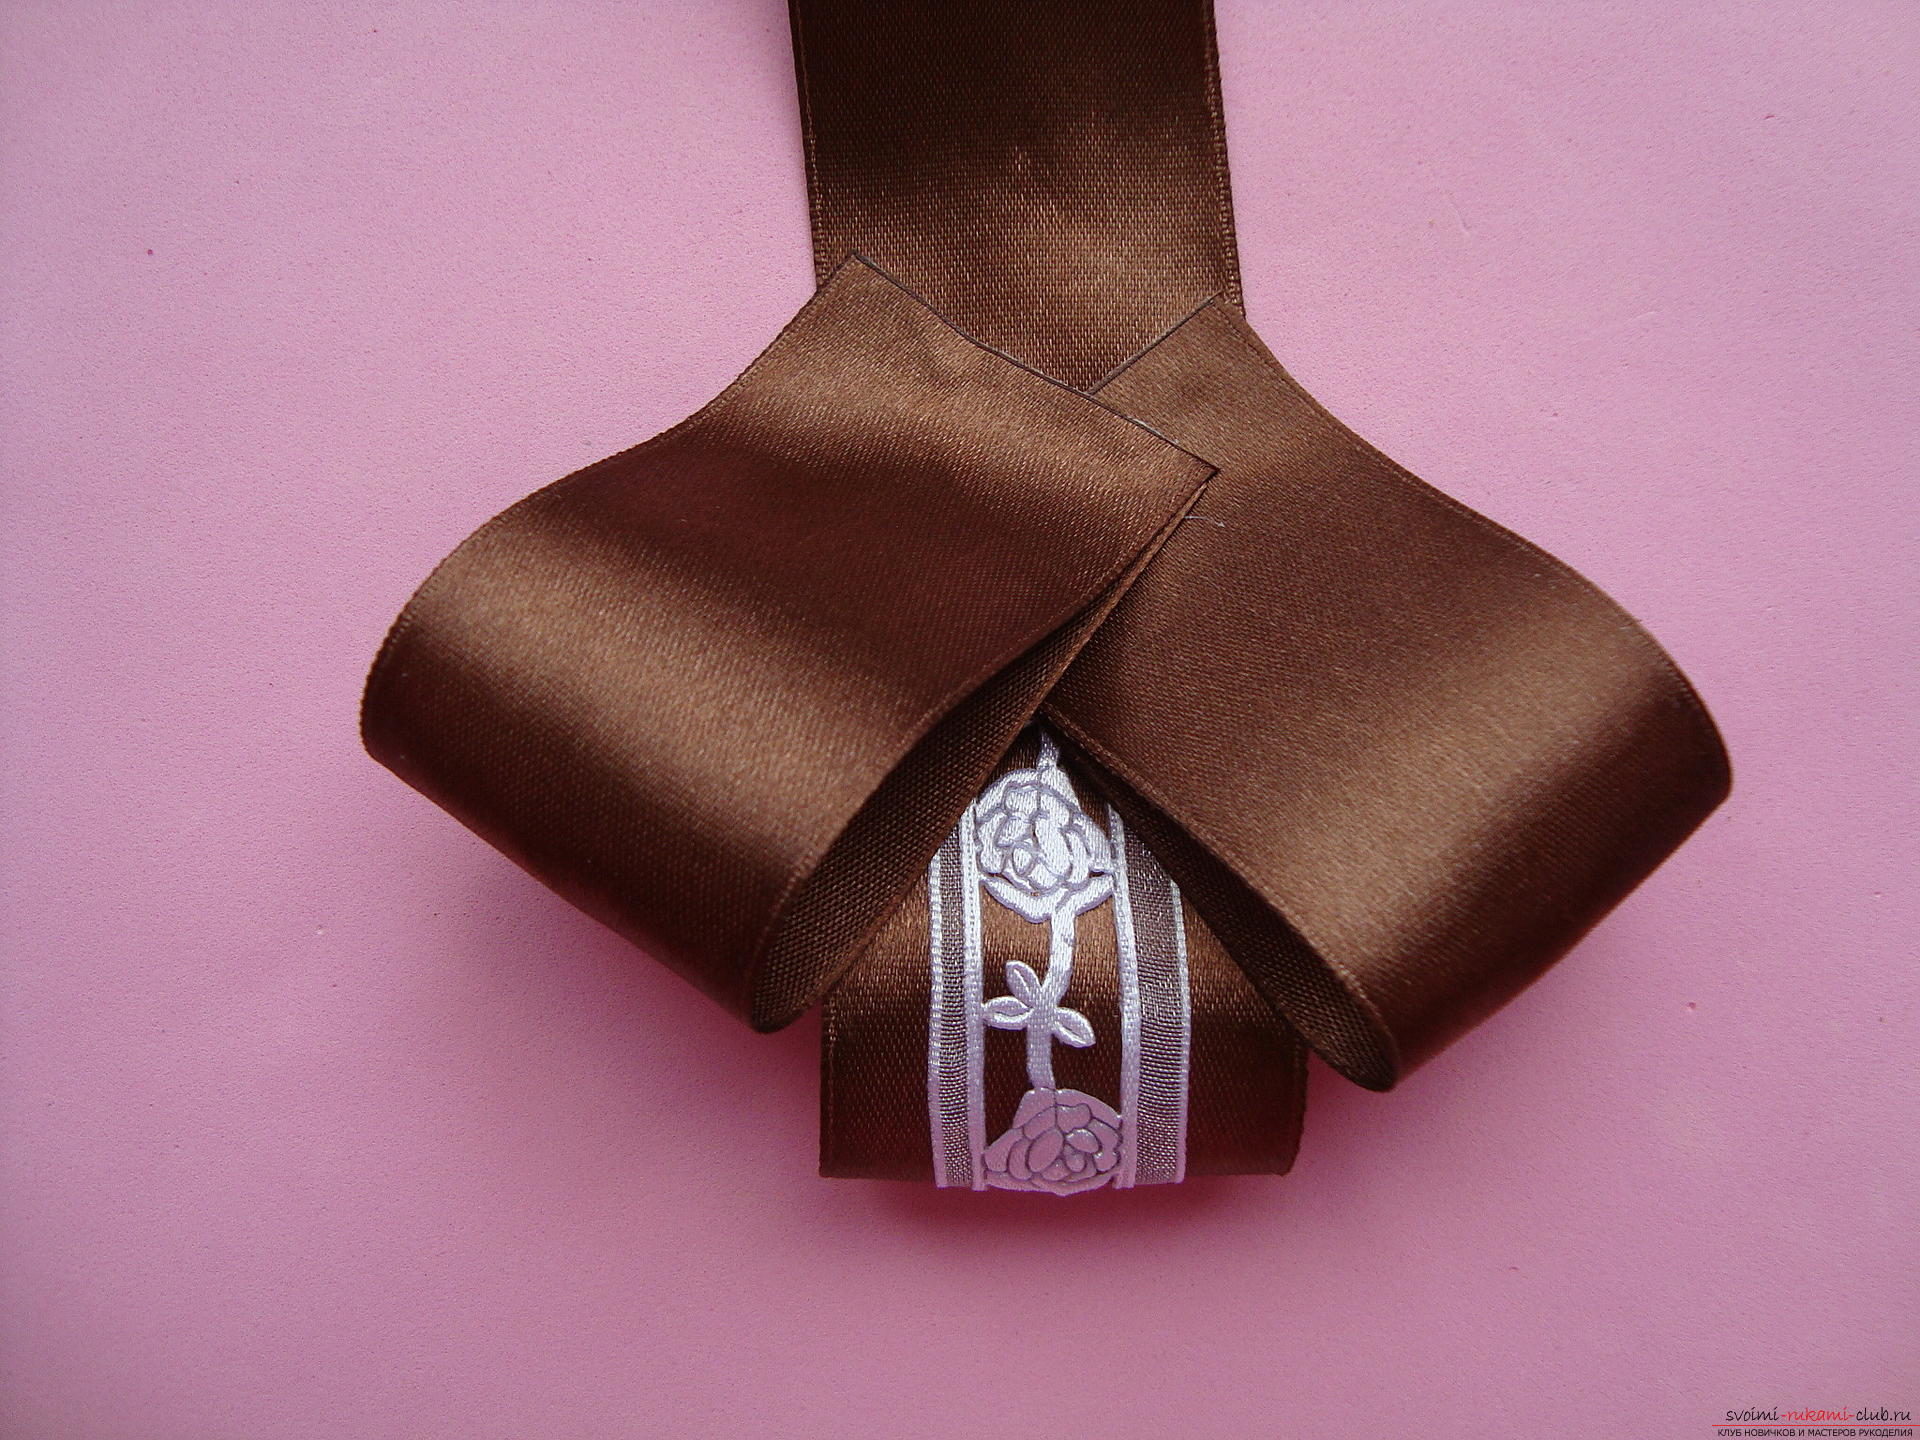 Пошаговая инструкция по изготовлению объемного галстука и бантов. Фото №7